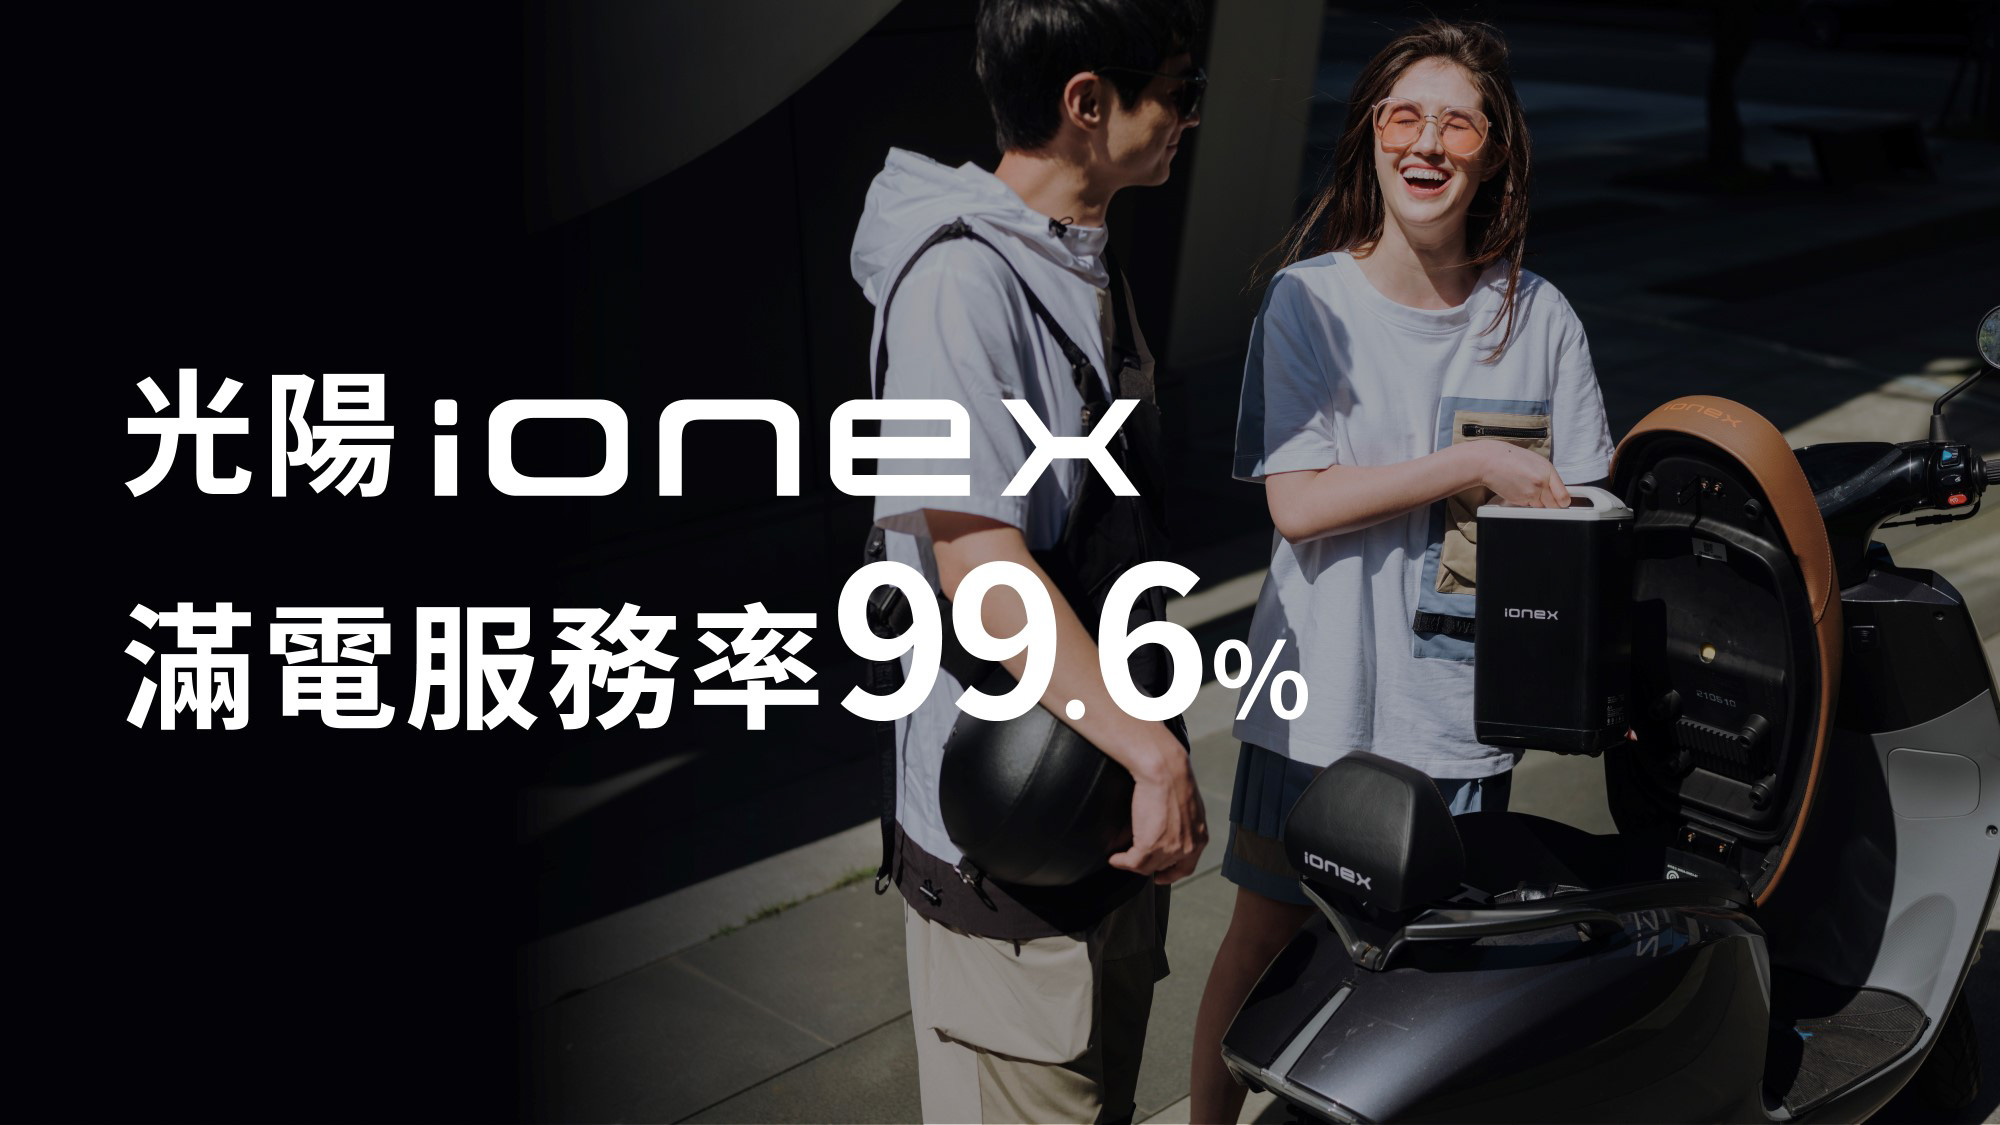 光陽 Ionex 進駐 Costco，i-One／S6／S7 推「會員特惠價」